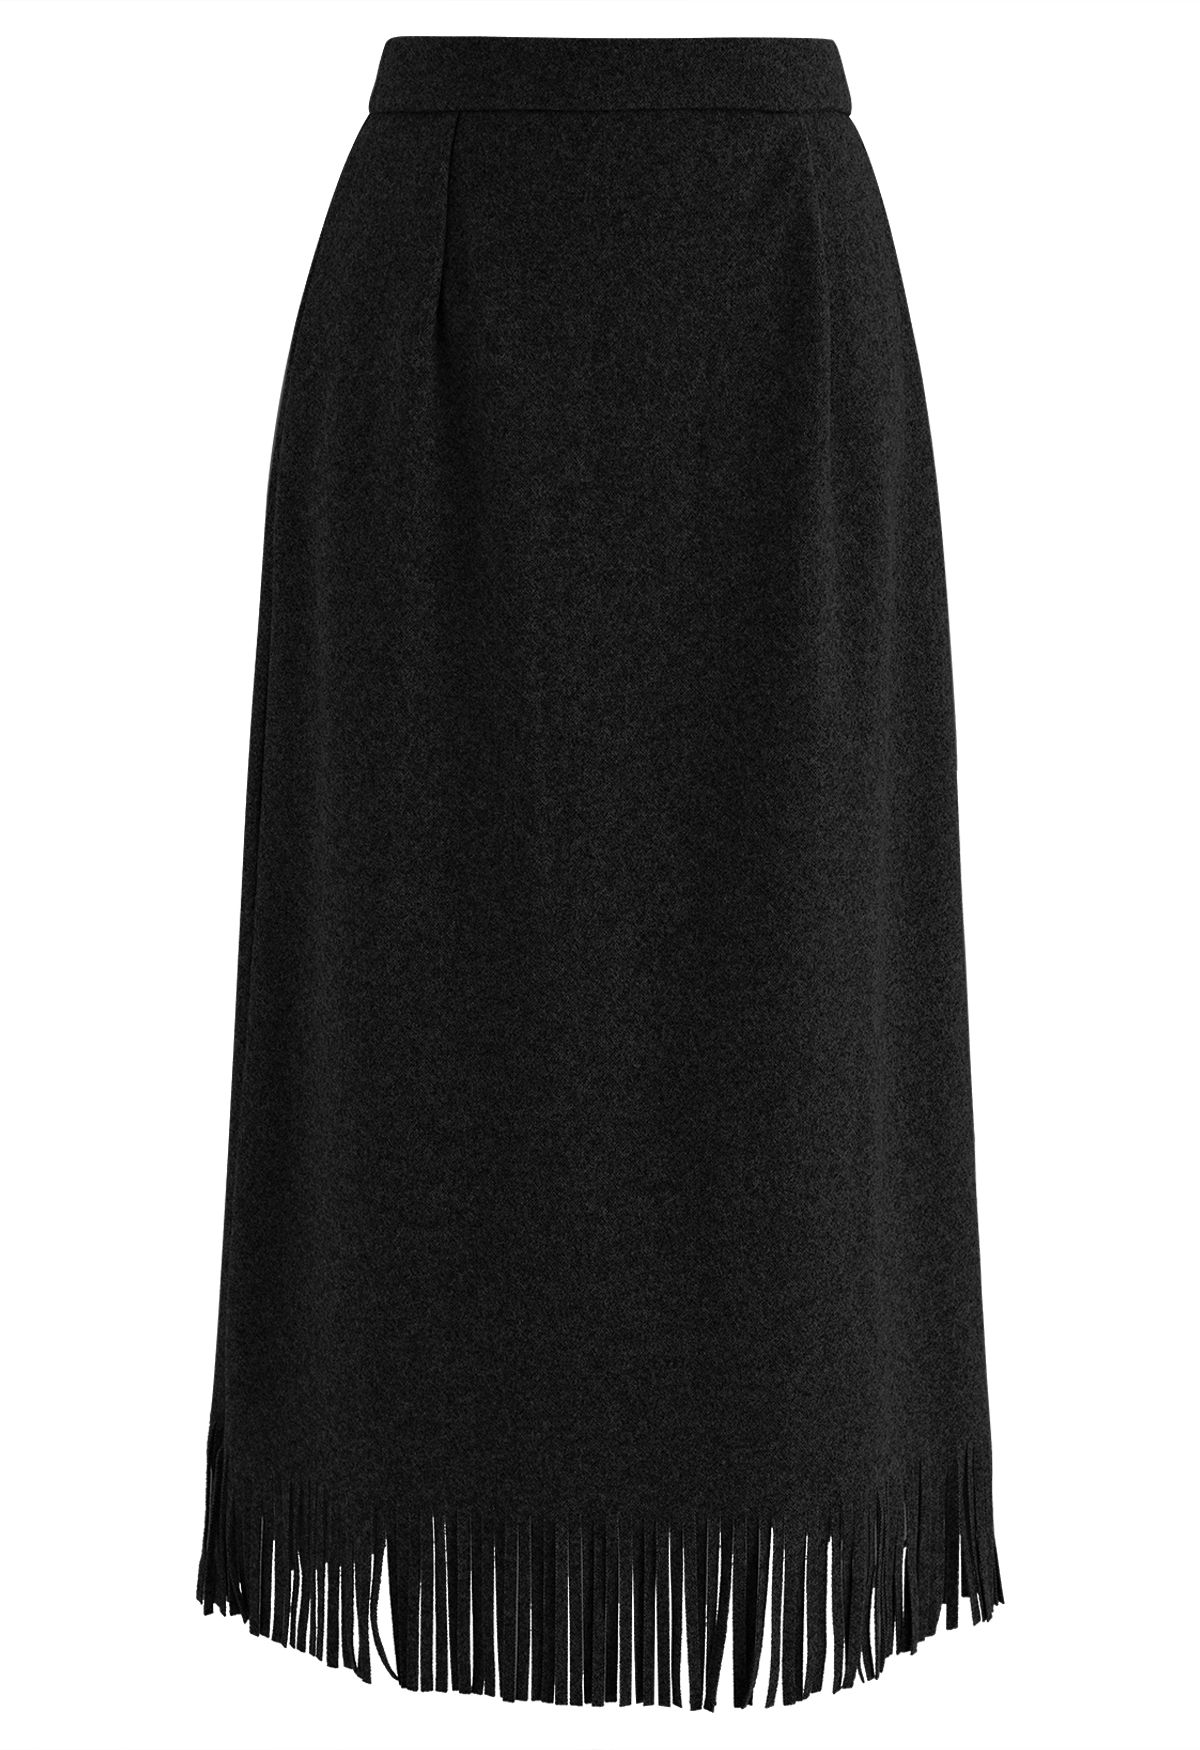 High Waist Fringe Hem Pencil Skirt in Black